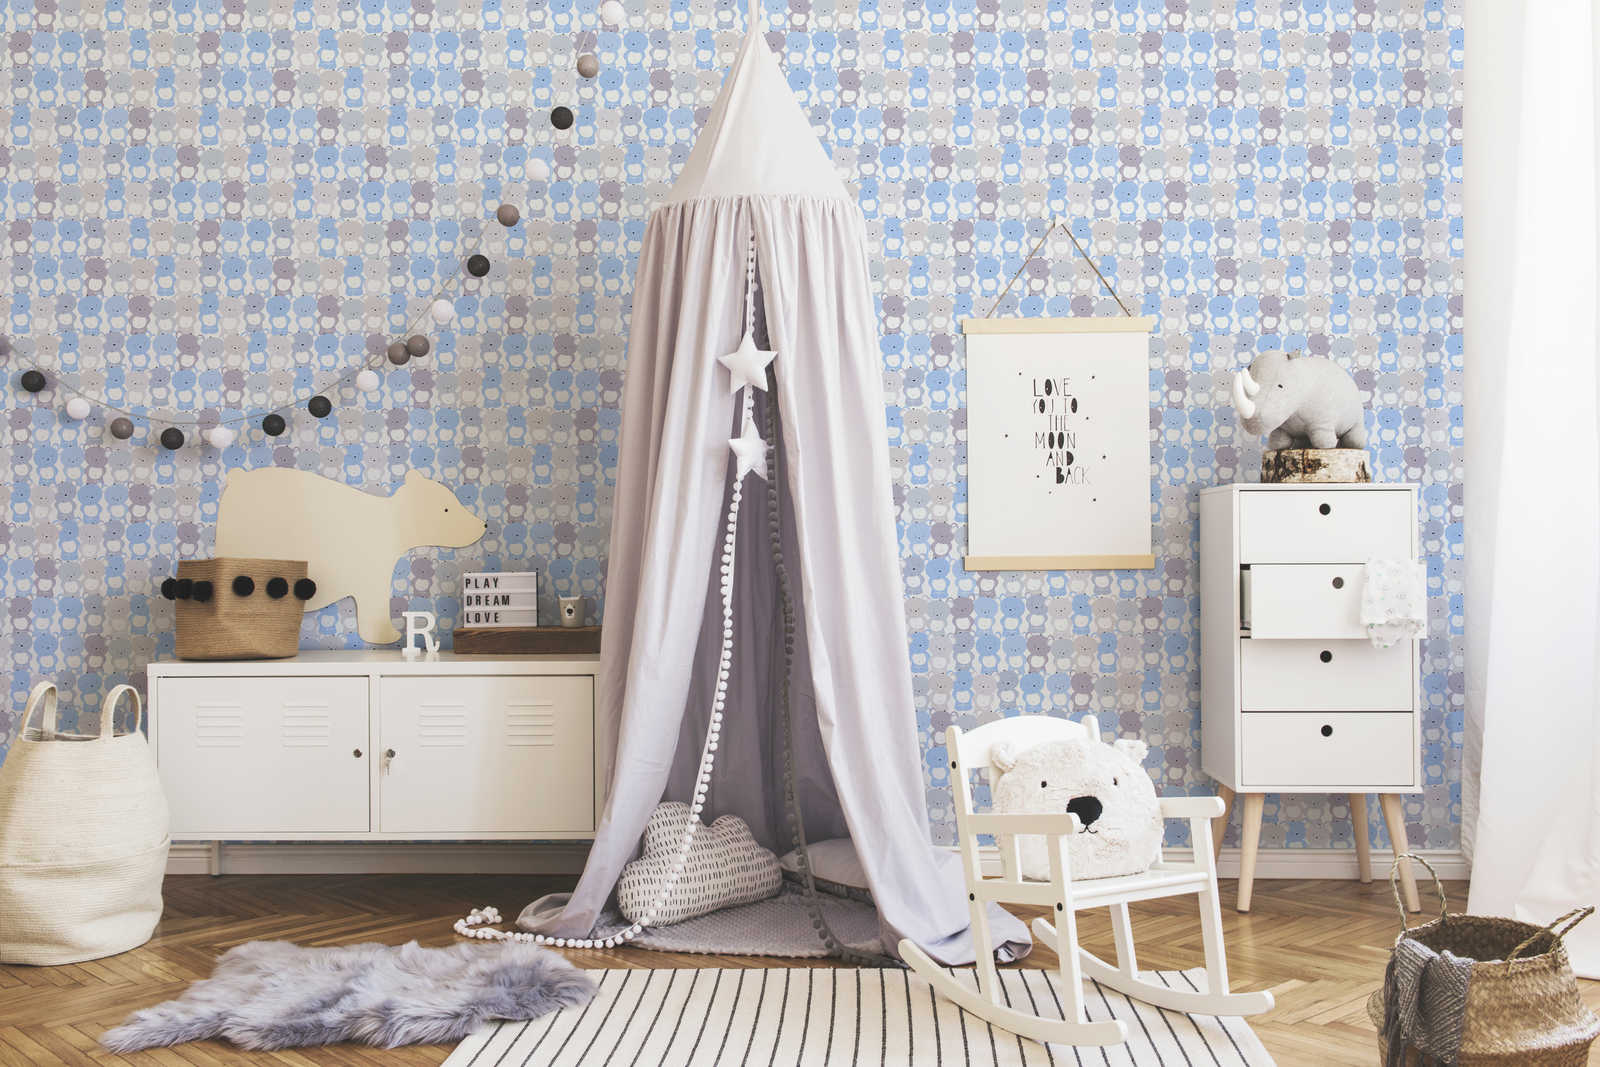             Kinder Tapete Jungenzimmer Bärchen Muster – Blau, Grau , Weiß
        